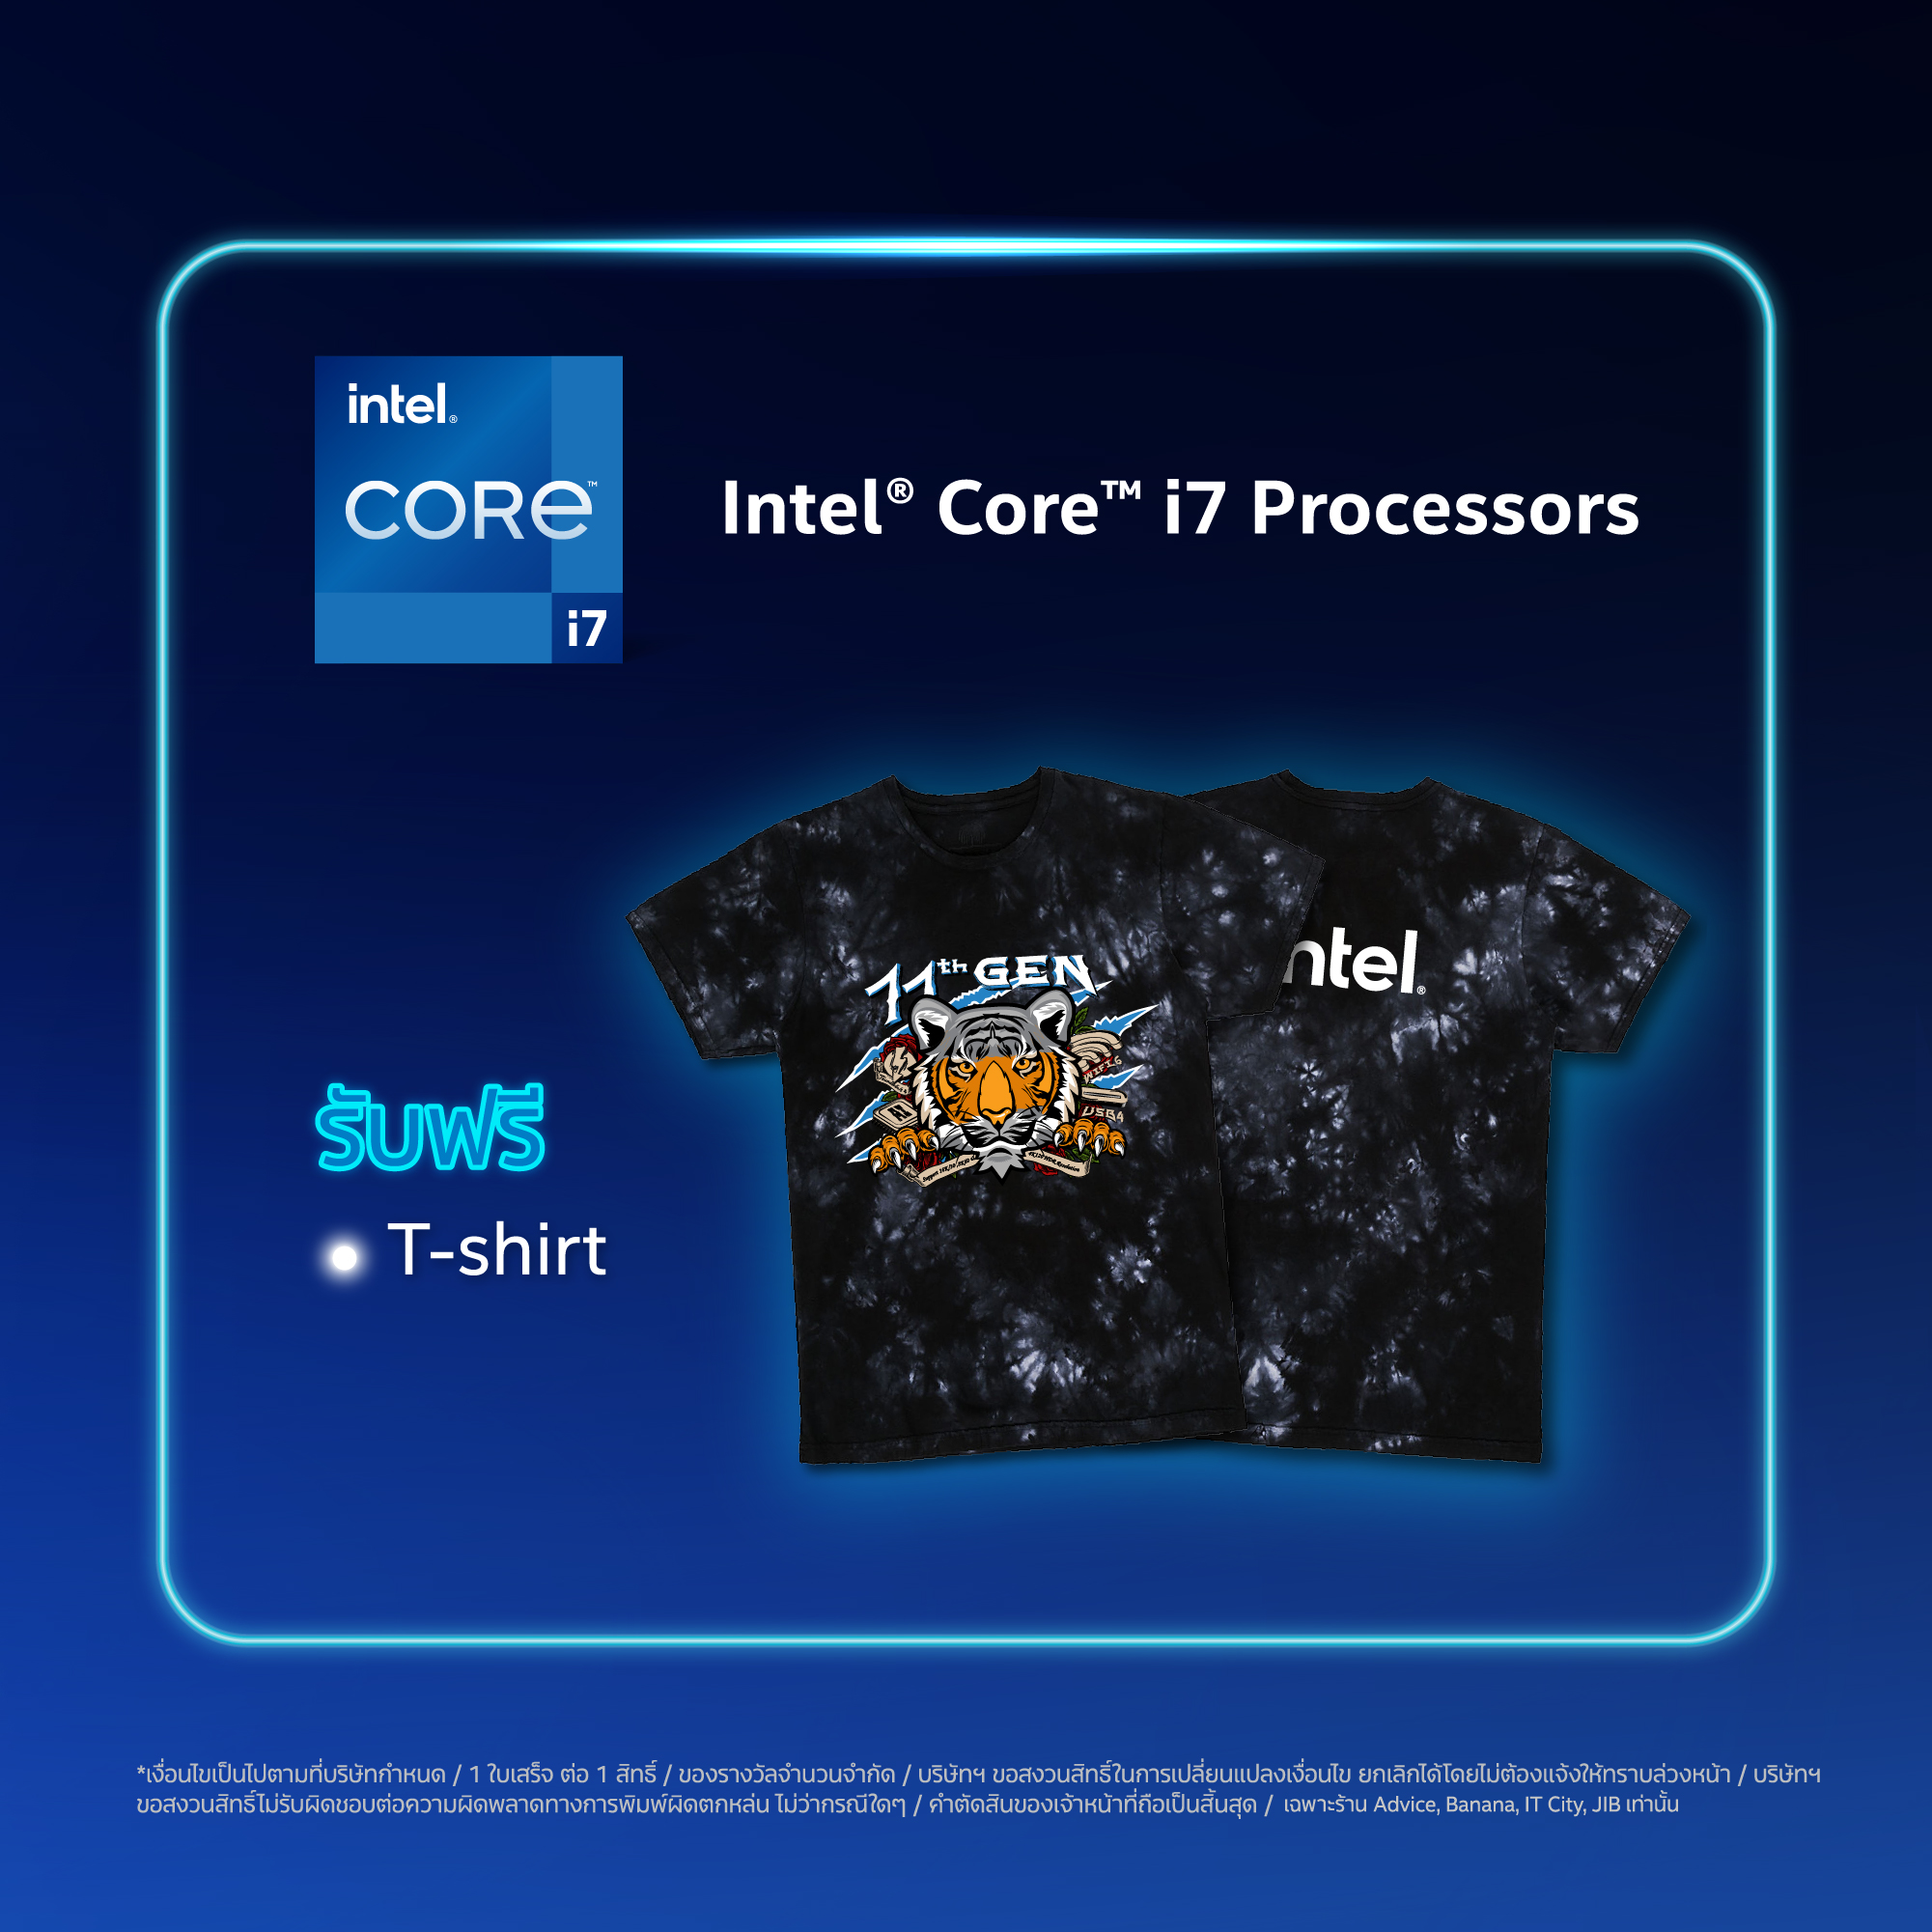 aw online 960x960px 04 Intel จัดโปรโมชั่น COMMART XTREME 2020 ซื้อคอมพิวเตอร์ที่ใช้ซีพียู Intel รับของแถมสุดพิเศษเพียบ! พบกับโปรโมชั่นสุดพิเศษจาก Intel เฉพาะงานคอมมาร์ท ไบเทค บางนา